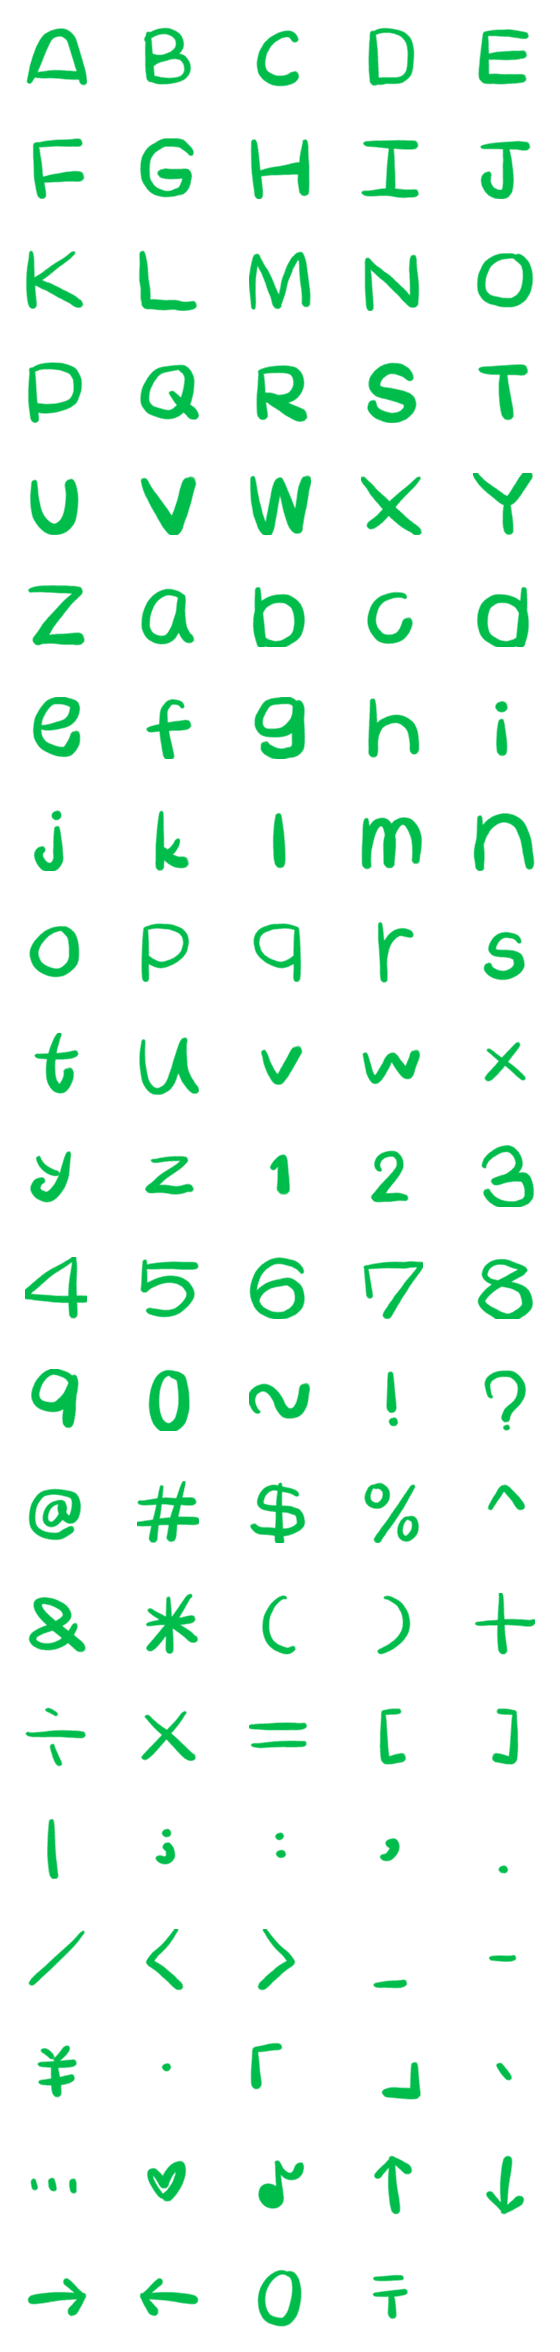 Line絵文字 緑色の英語のアルファベットabc 104種類 1円